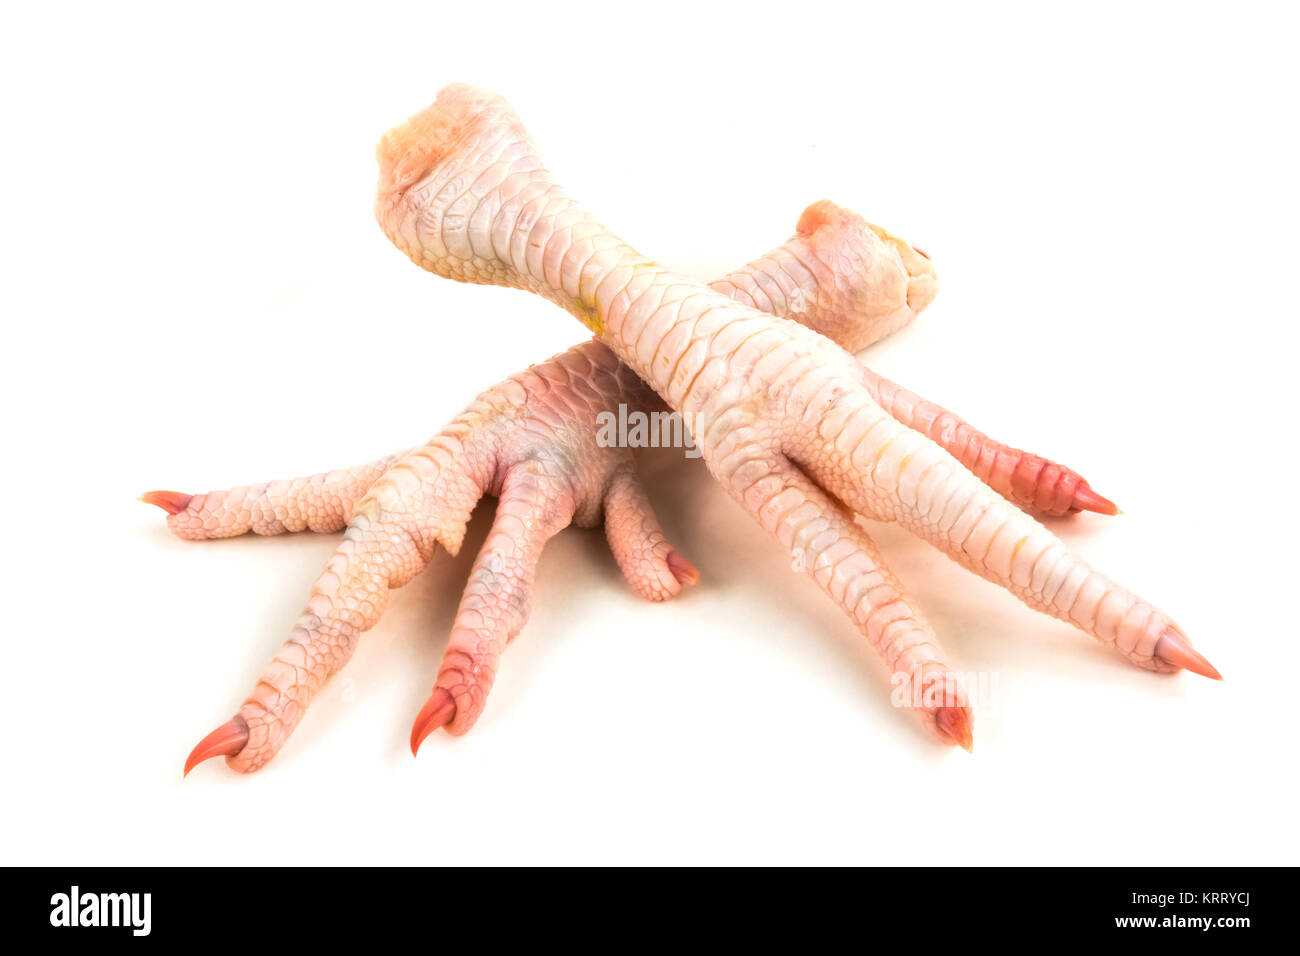 Hühnerfüsse, asiatische Delikatesse auf weissem Hintergrund Stock Photo